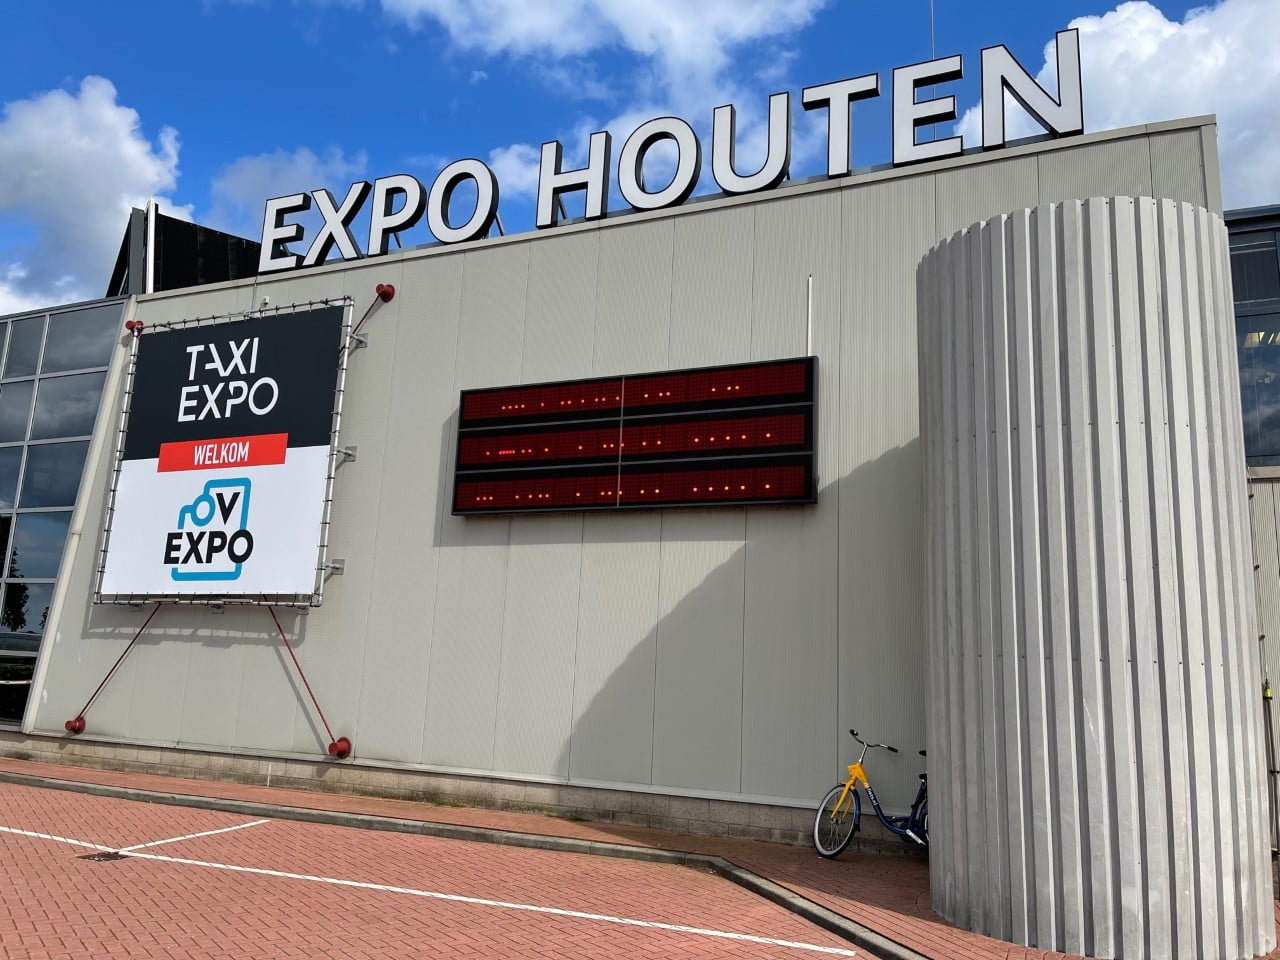 Taxi Expo, een bijzondere ontmoetingsplek